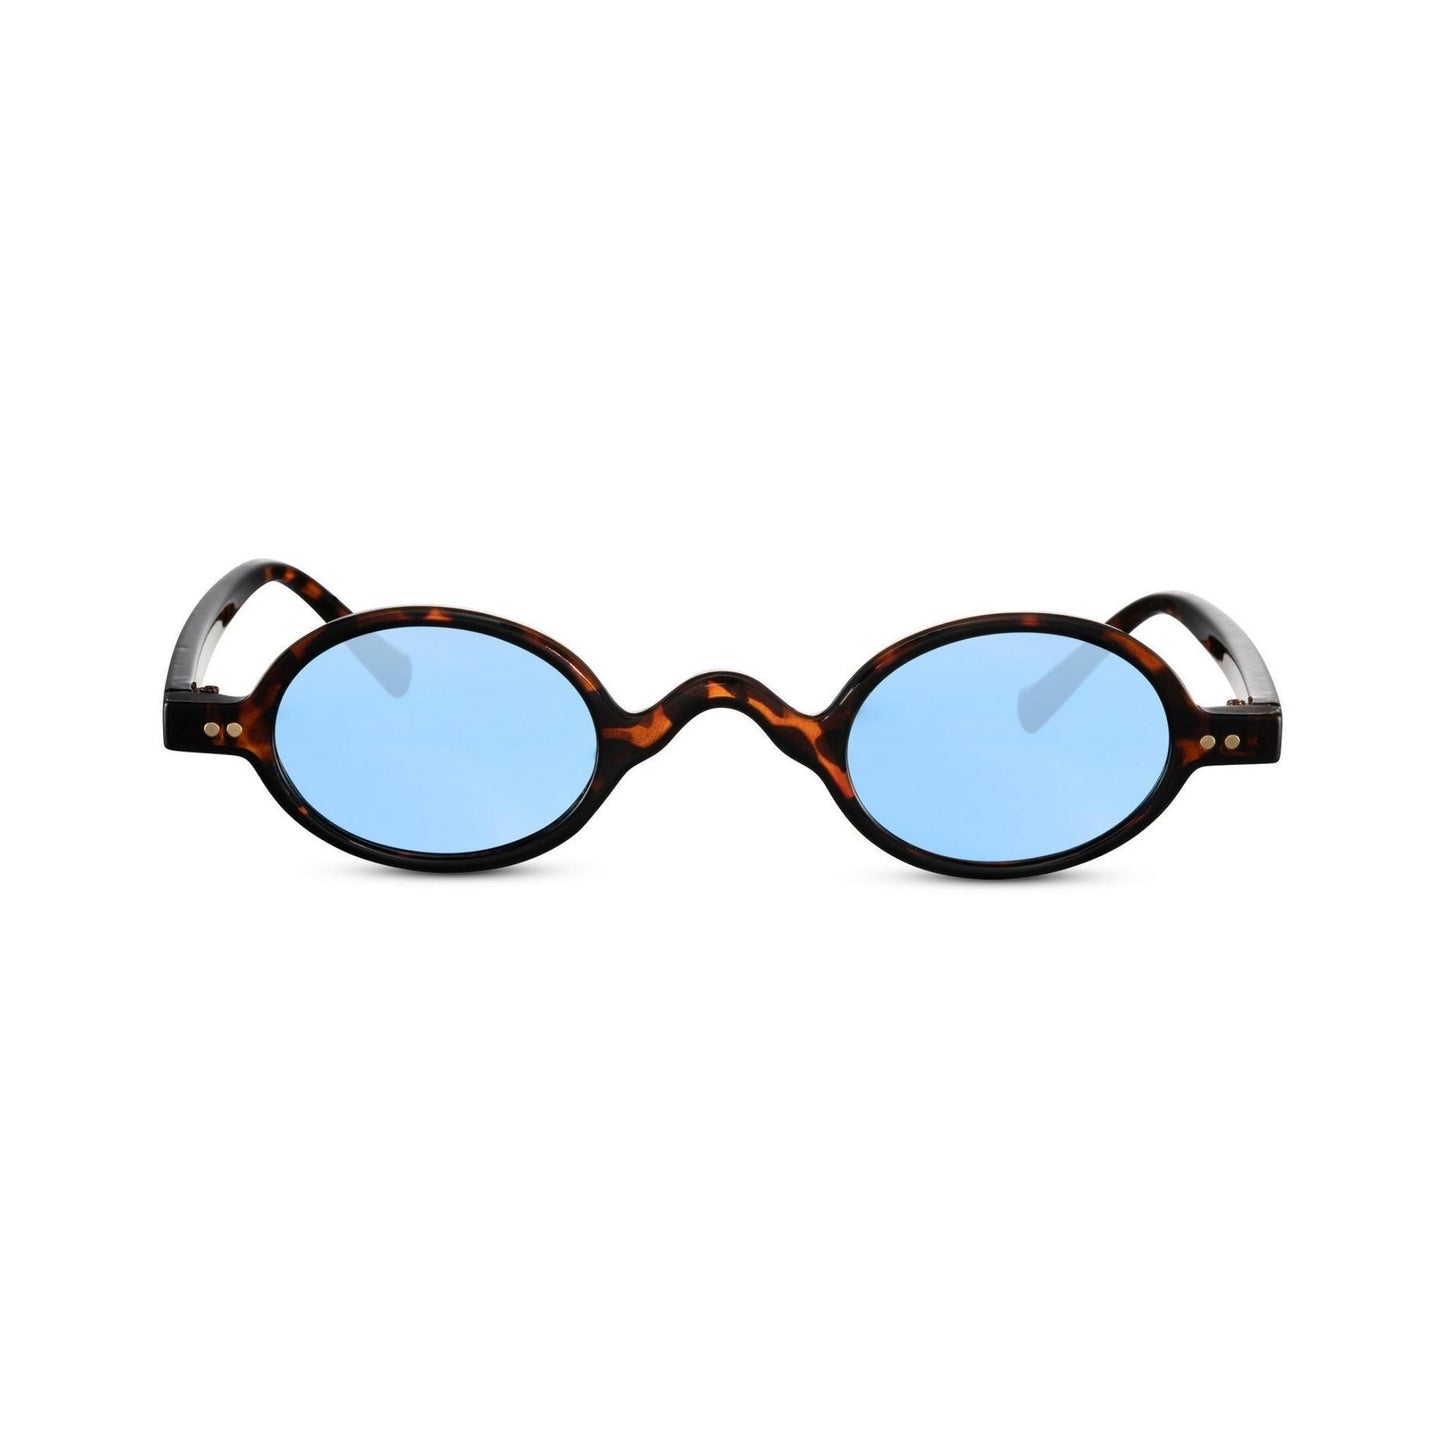 Γυαλιά ηλίου (στρογγυλά) Monaco της Exposure Sunglasses με προστασία UV400 με καφέ σκελετό και μπλε φακό.